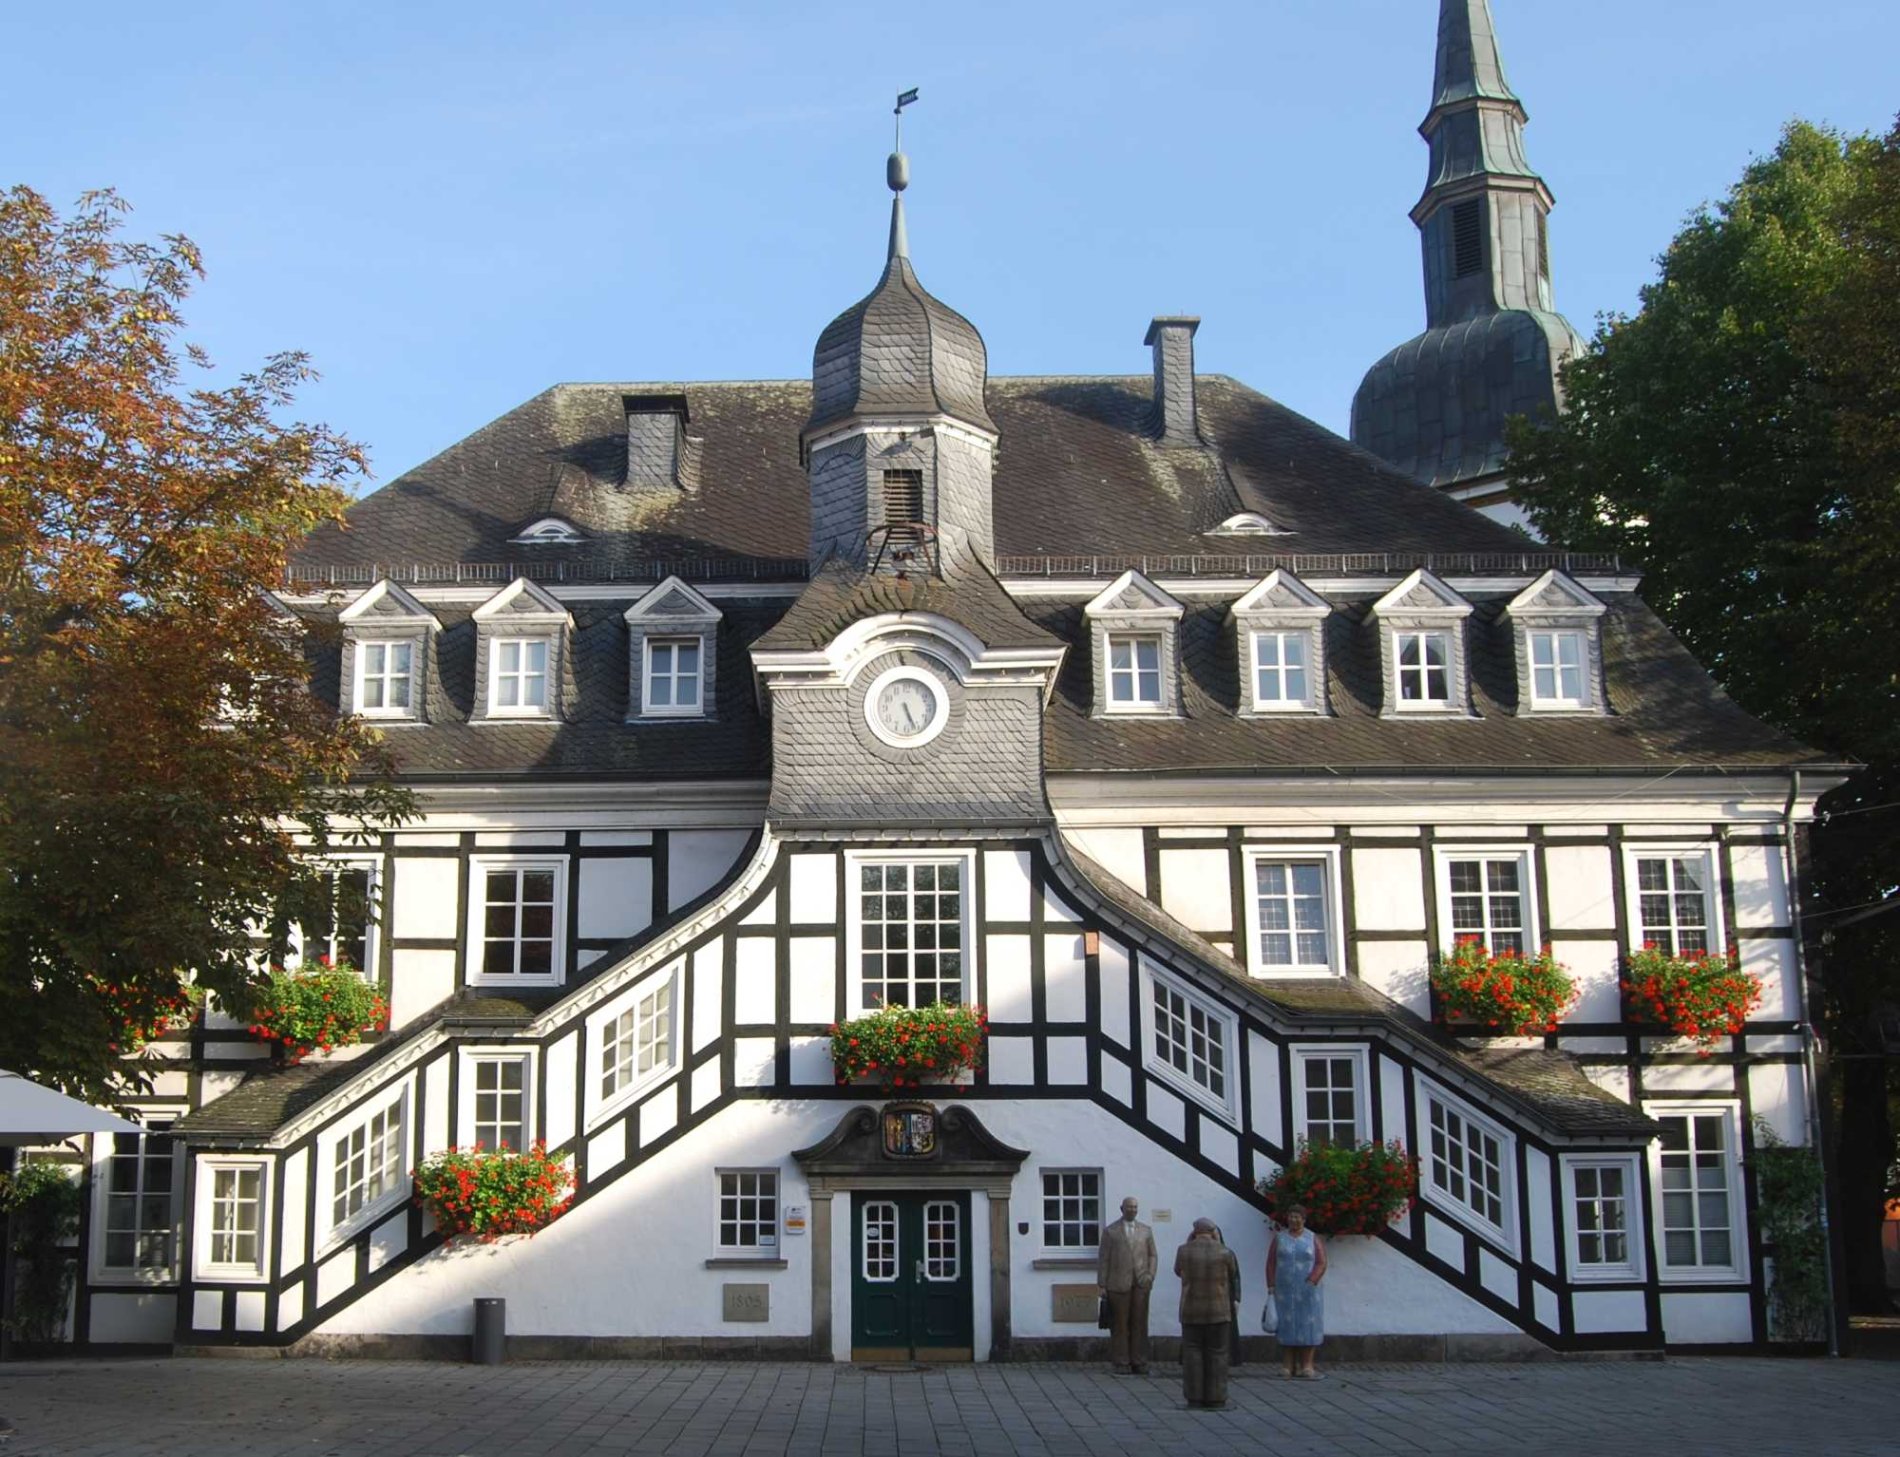 Historisches Rathaus